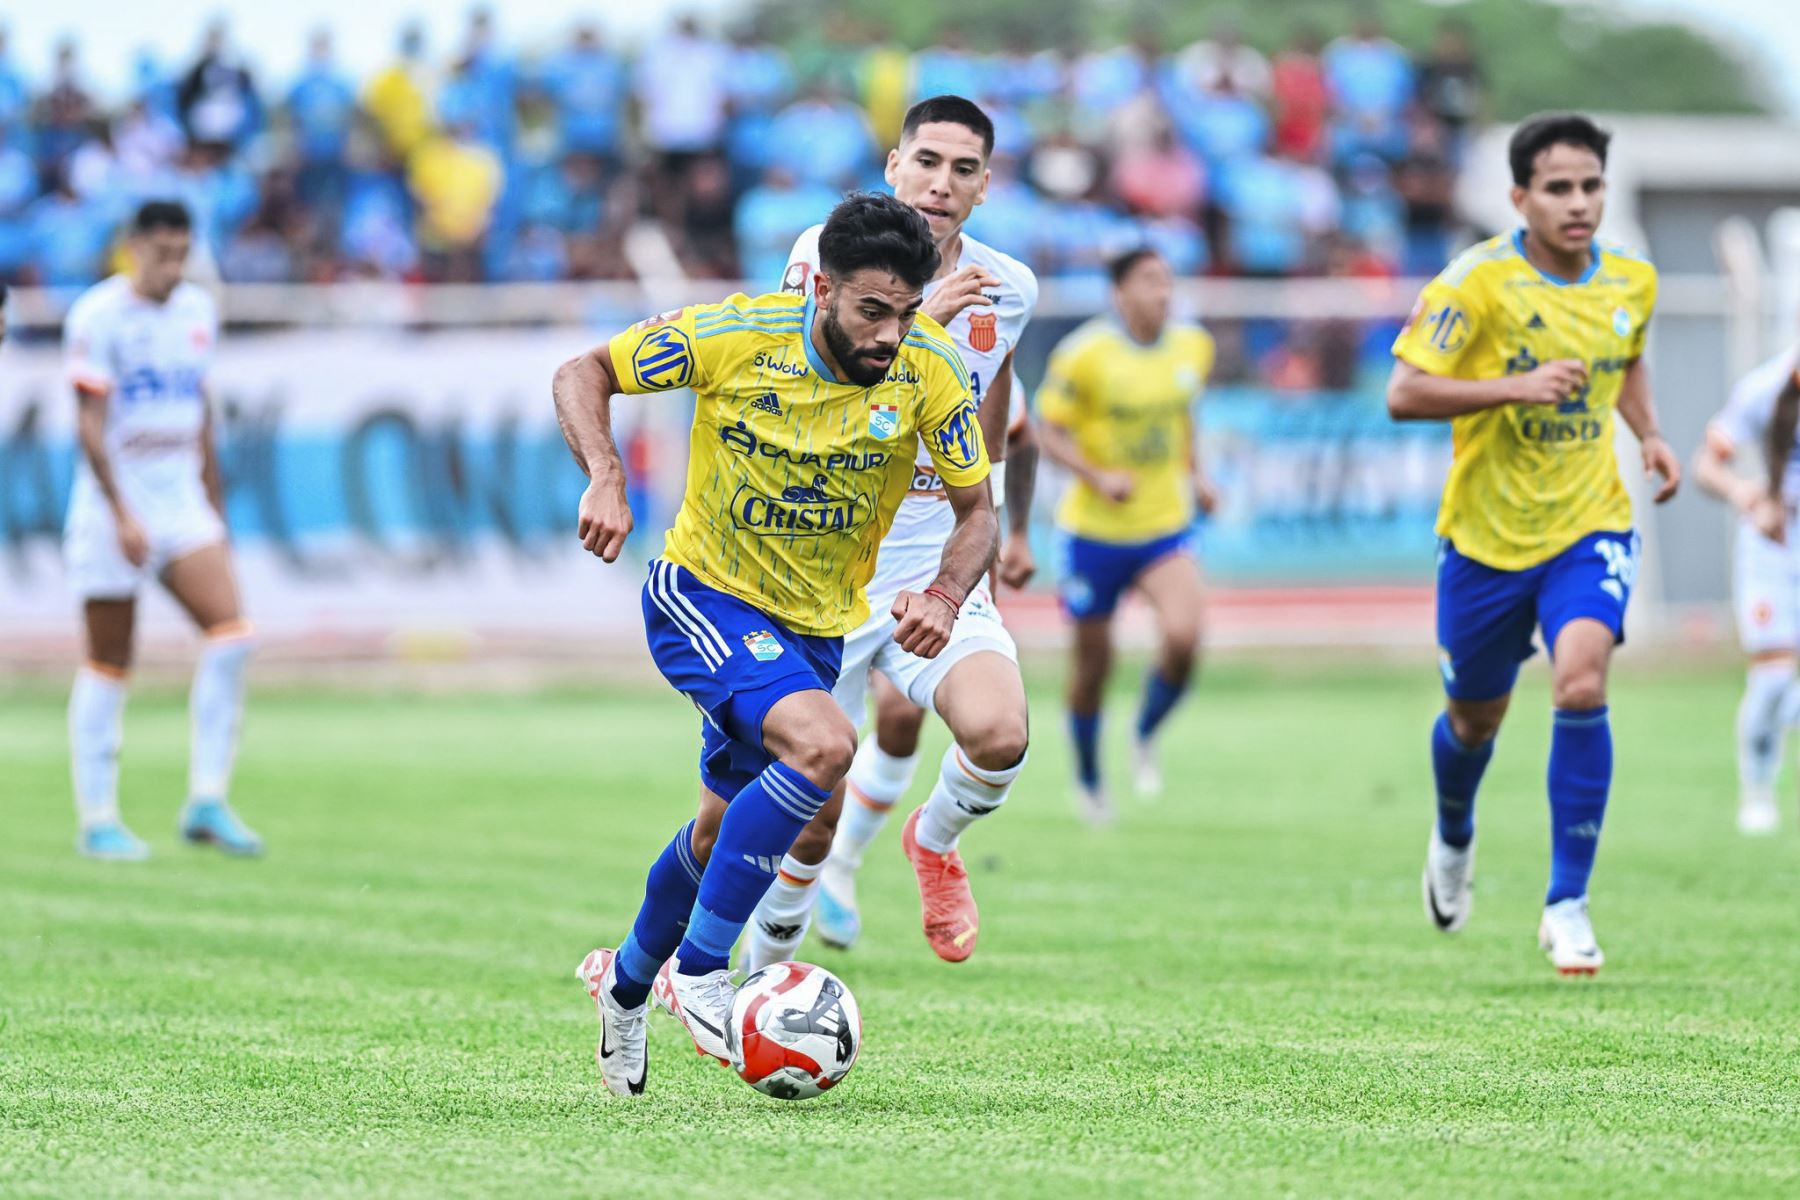 Jugando hoy con camiseta alterna de color amarillo, Cristal logró un triunfo crucial en Piura. Foto: INTERNET/Medios